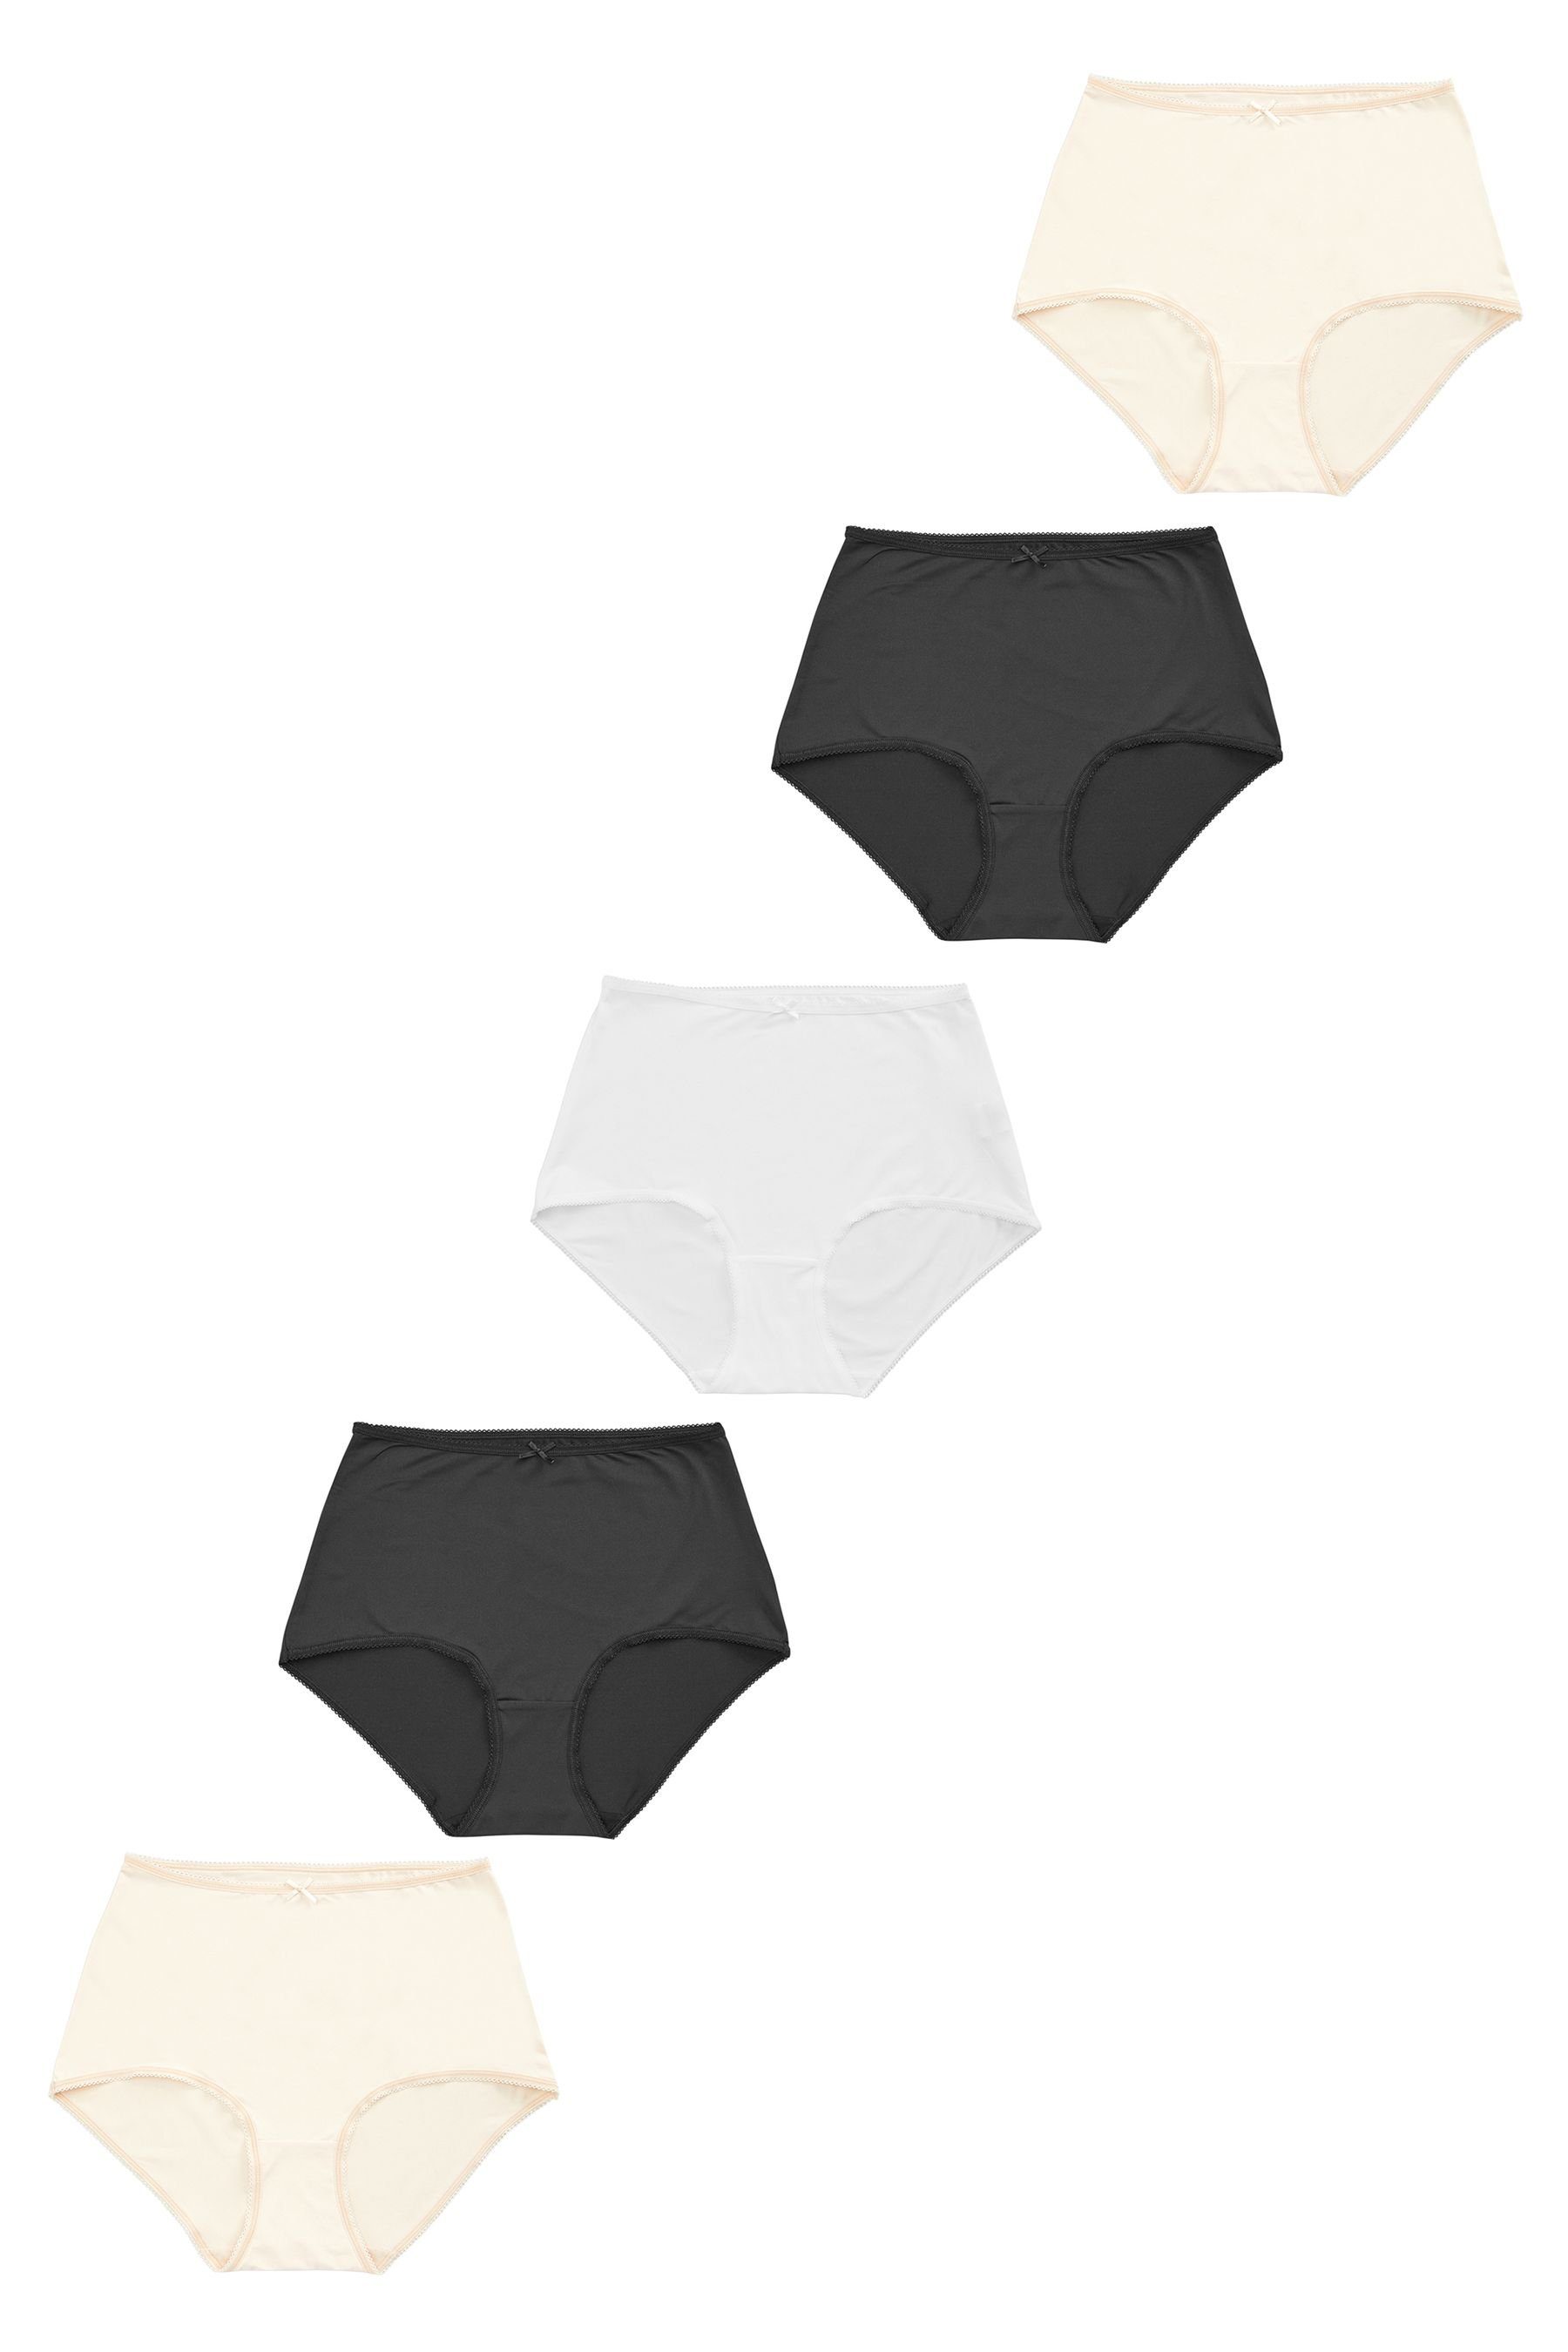 Next Maxislip 5er-Pack Black/White/Nougat Maxi Mikrofaser-Slips, (5-St)